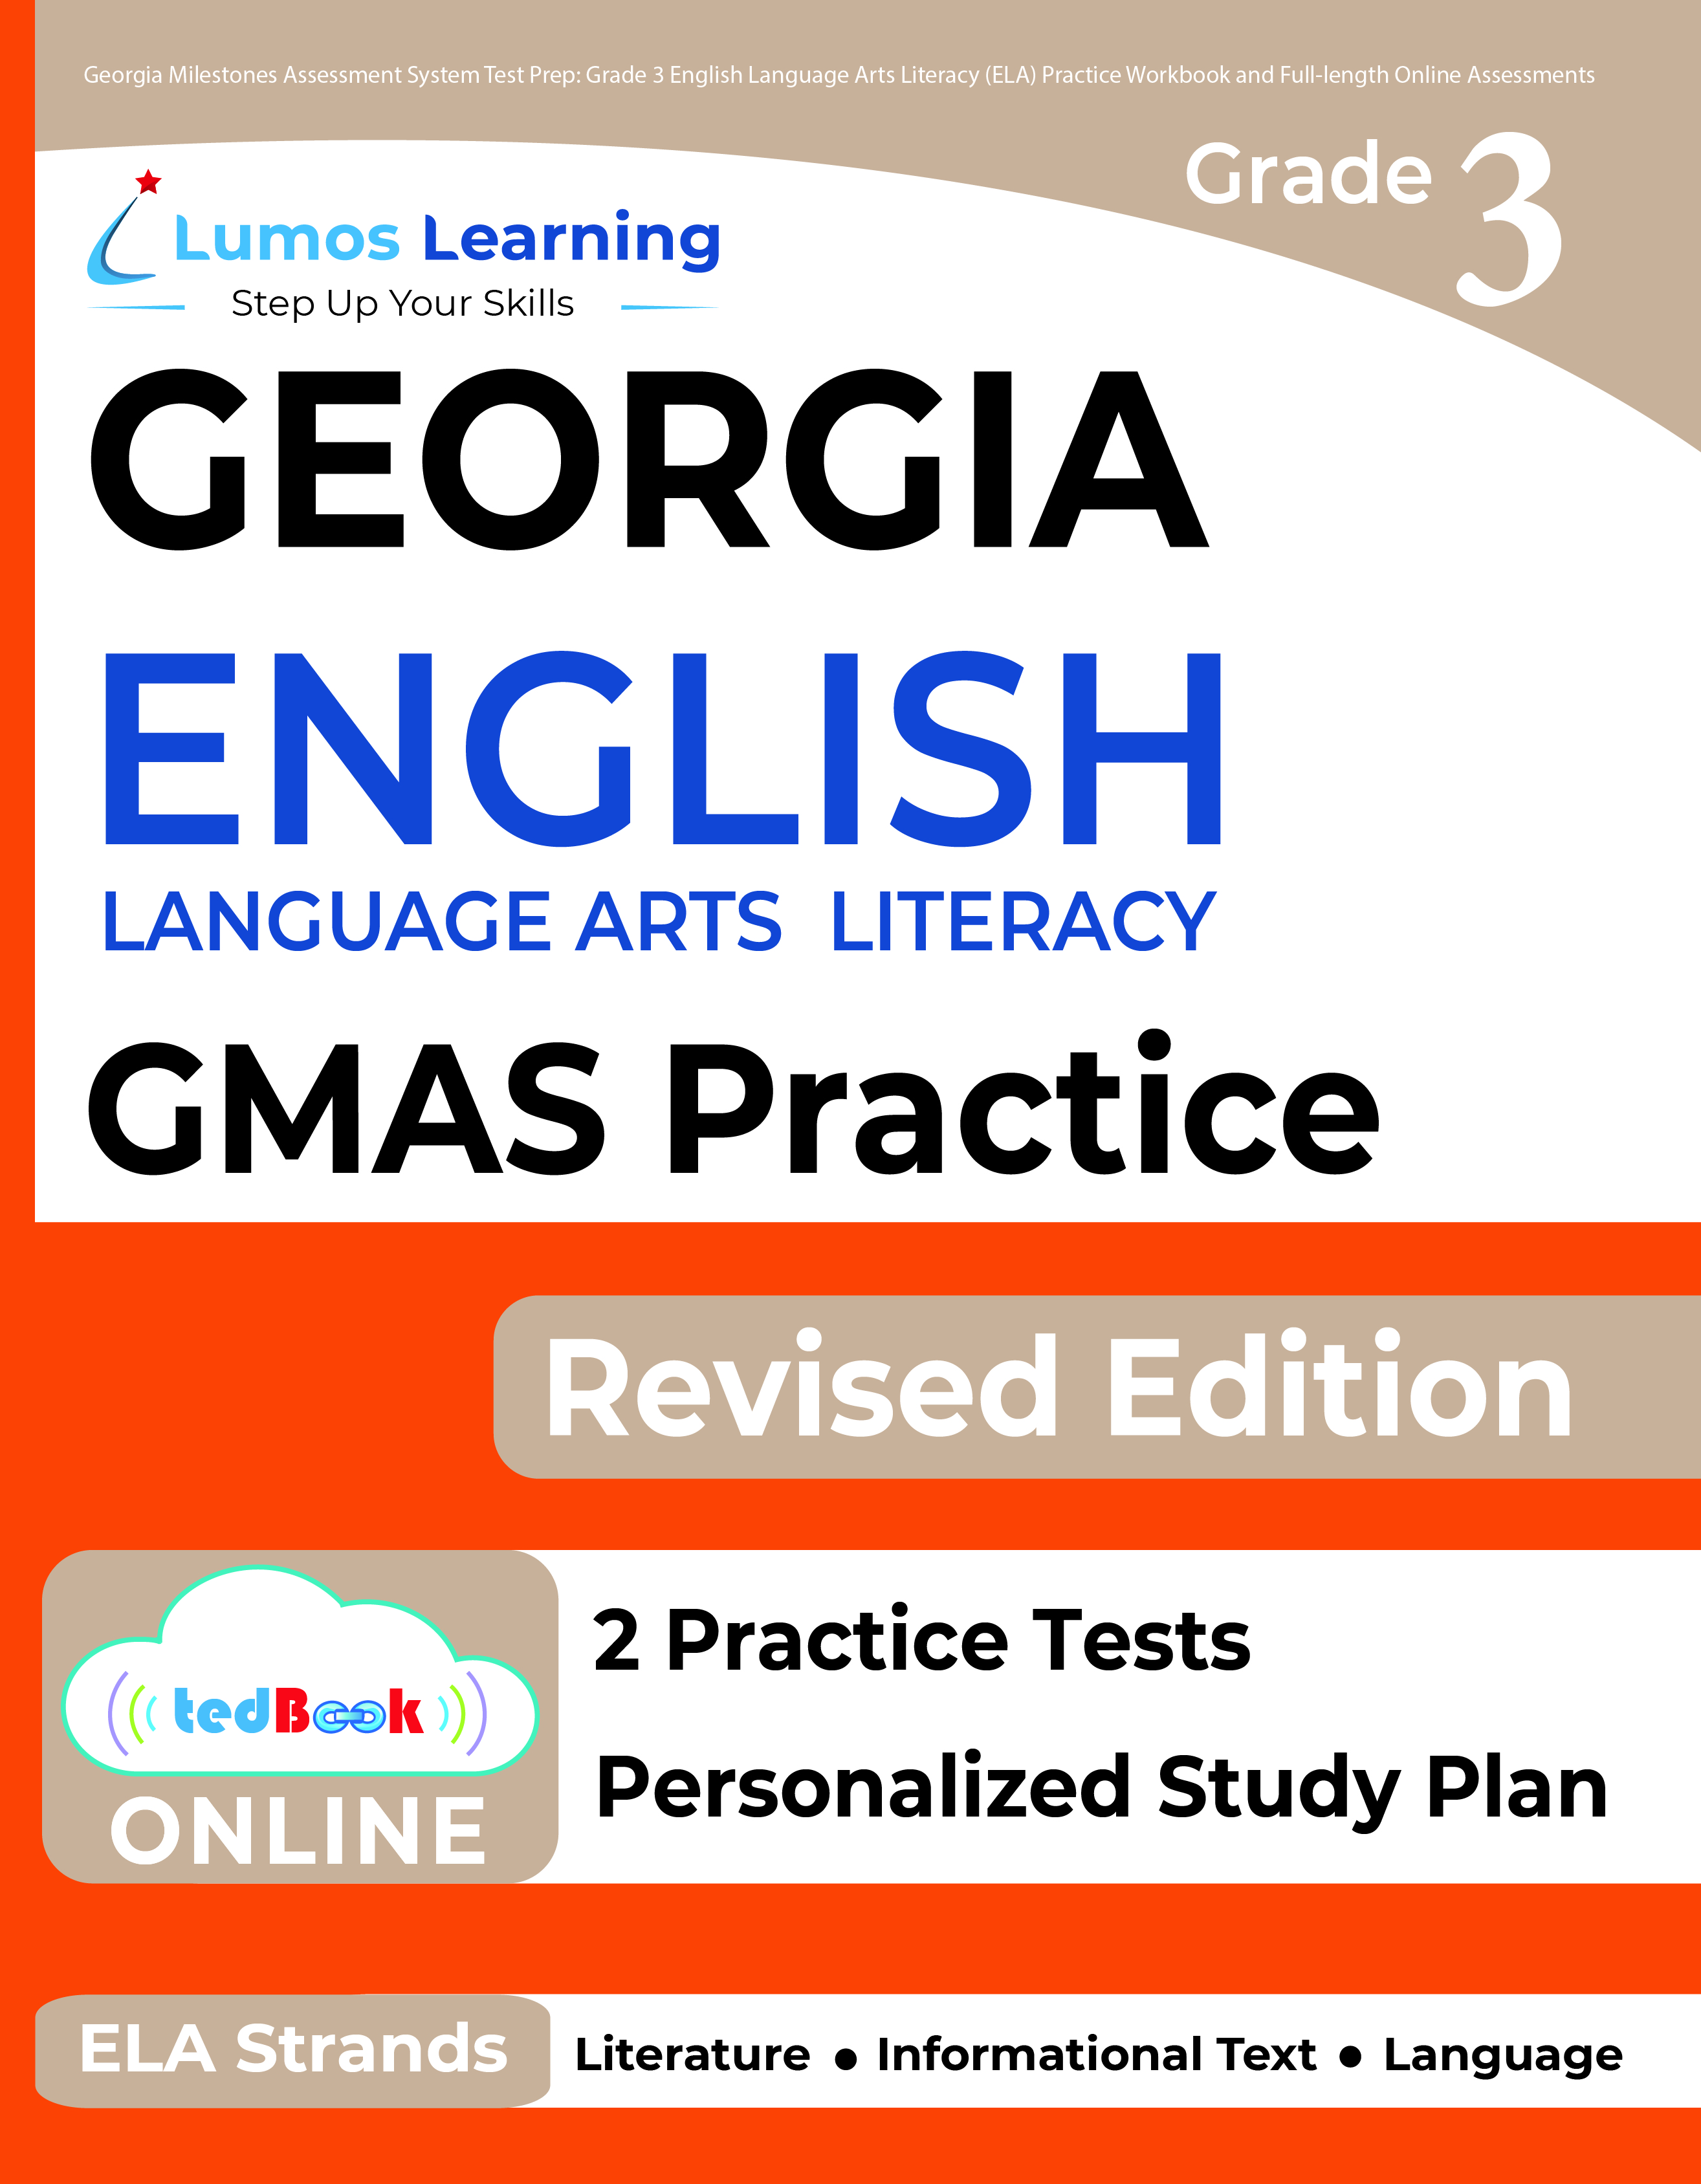 Grade 3 ELA gmas test prep workbooks